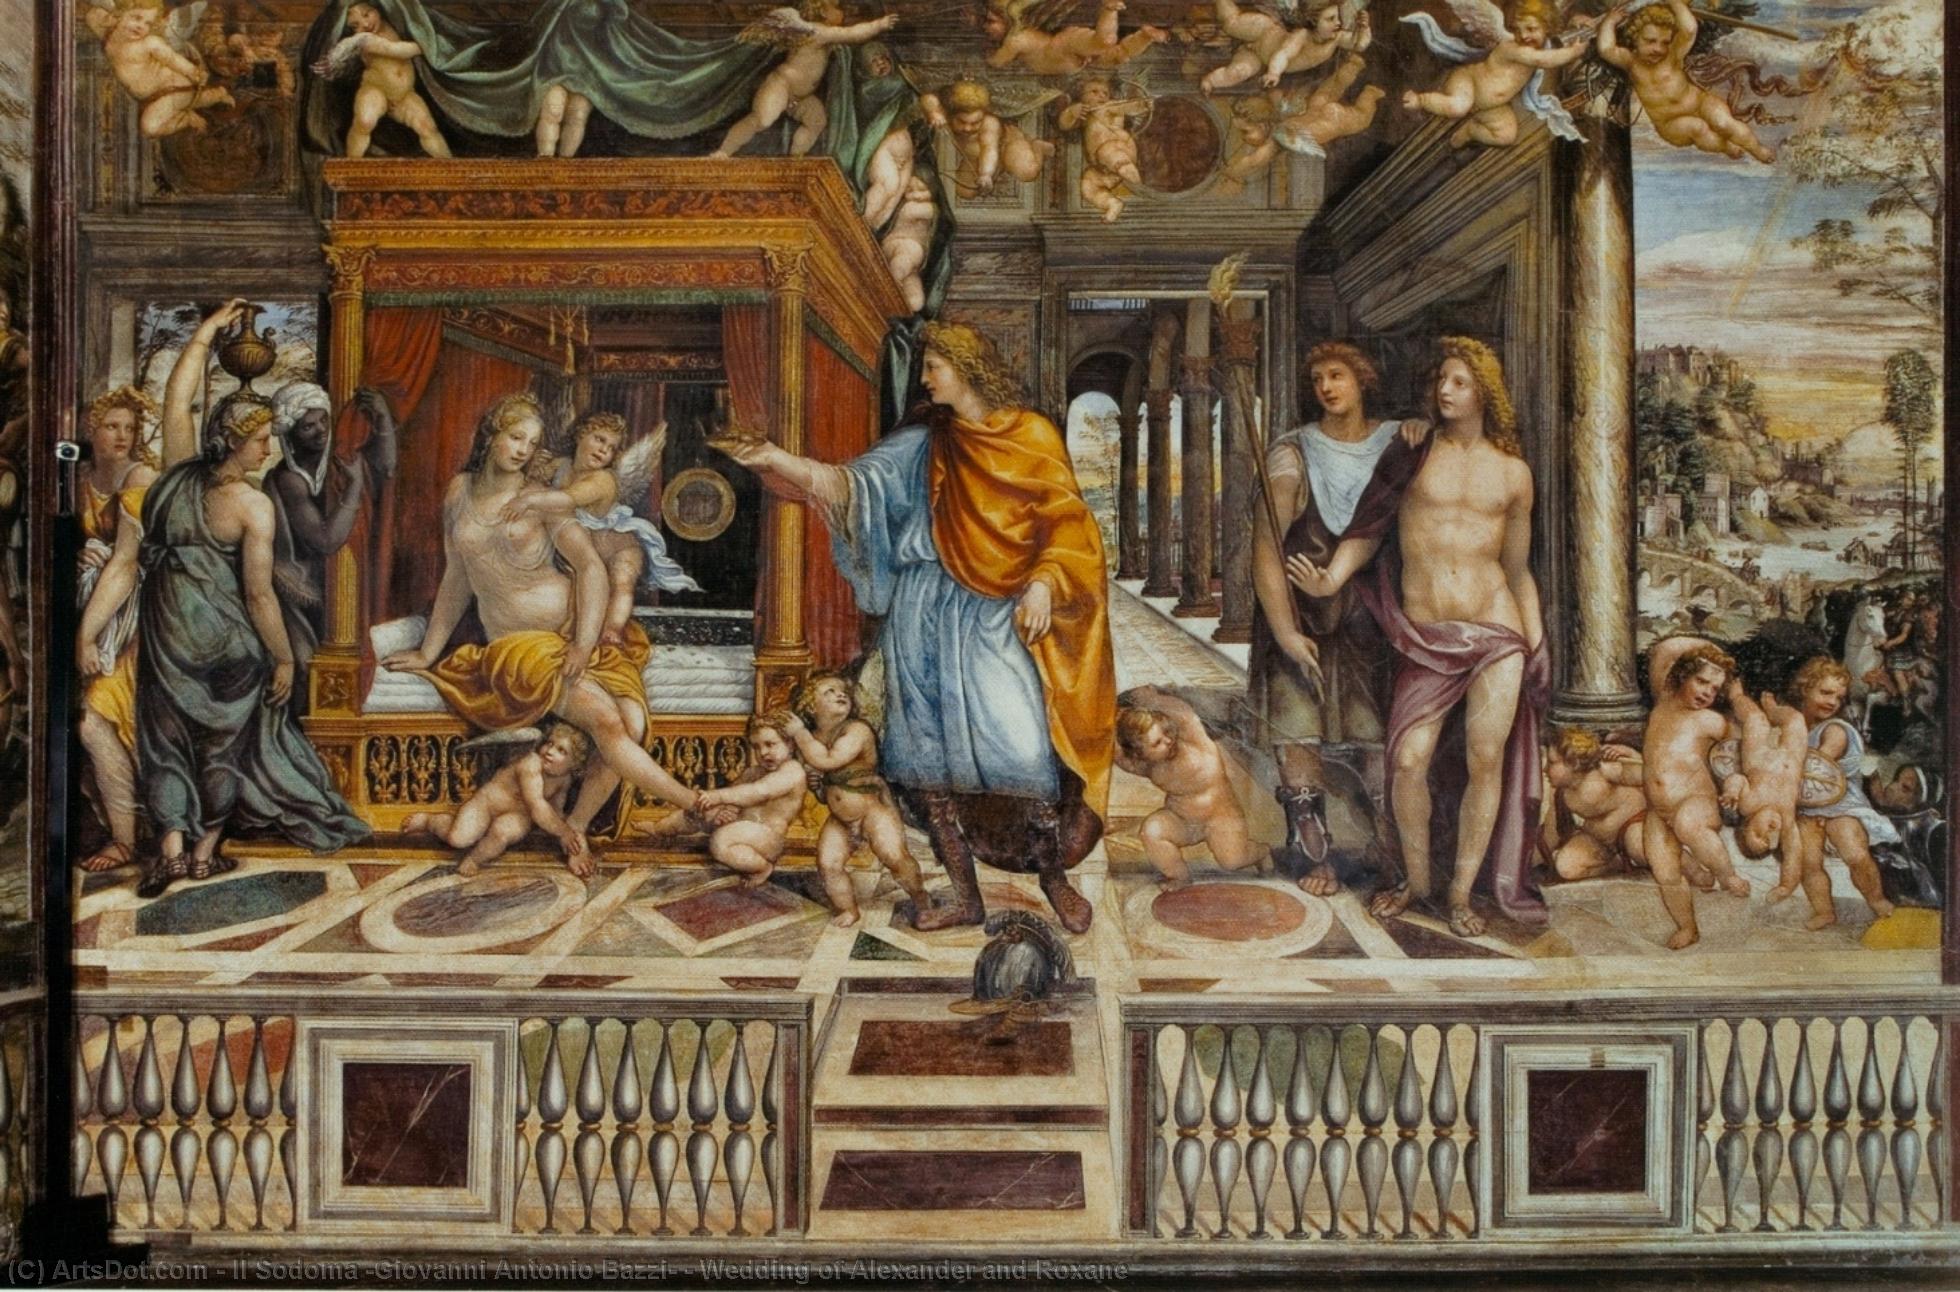 Ordinare Riproduzioni Di Belle Arti Matrimonio di Alessandro e Roxane, 1517 di Il Sodoma (Giovanni Antonio Bazzi) (1447-1549, Italy) | ArtsDot.com